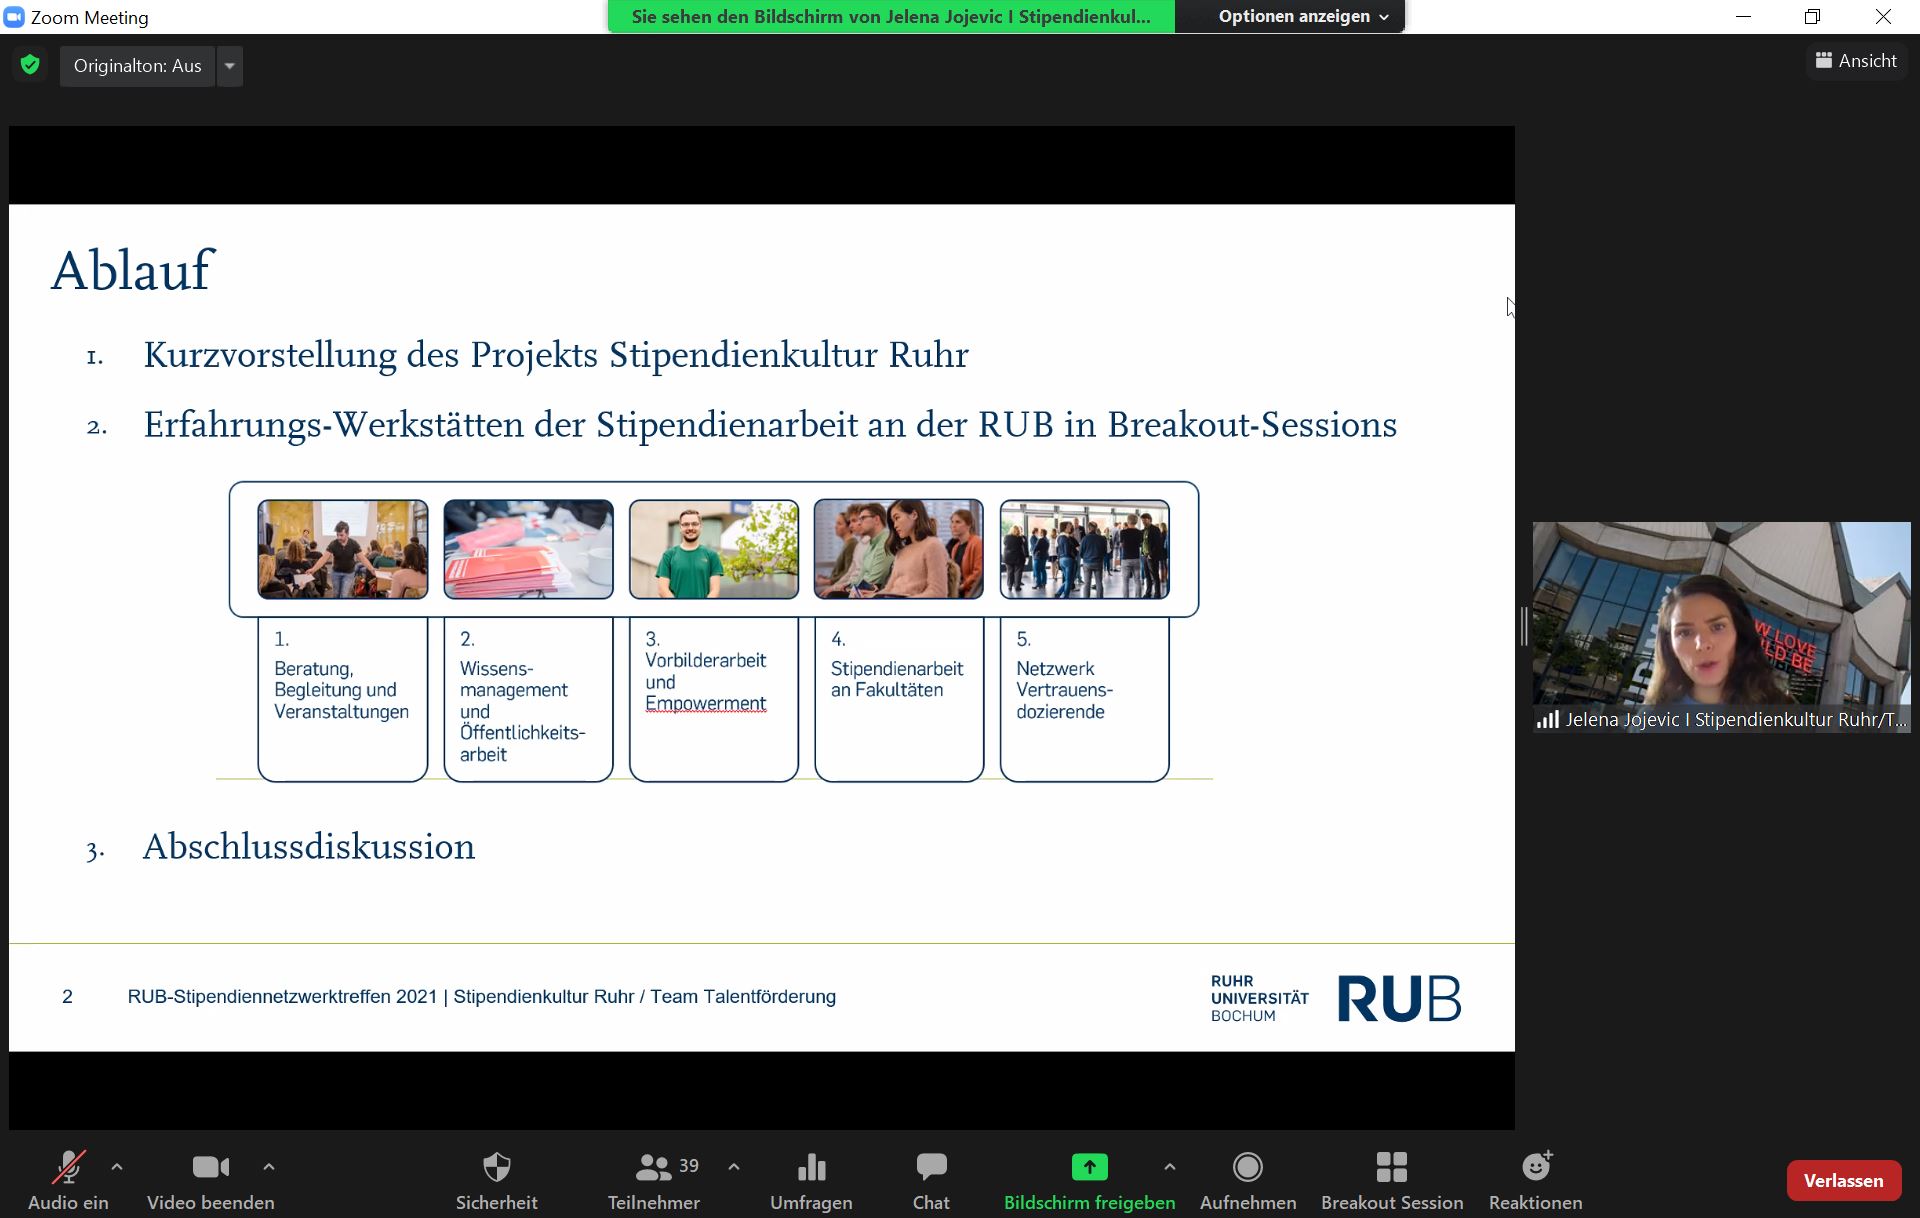 RUB-Stipendiennetzwerktreffen online 2021